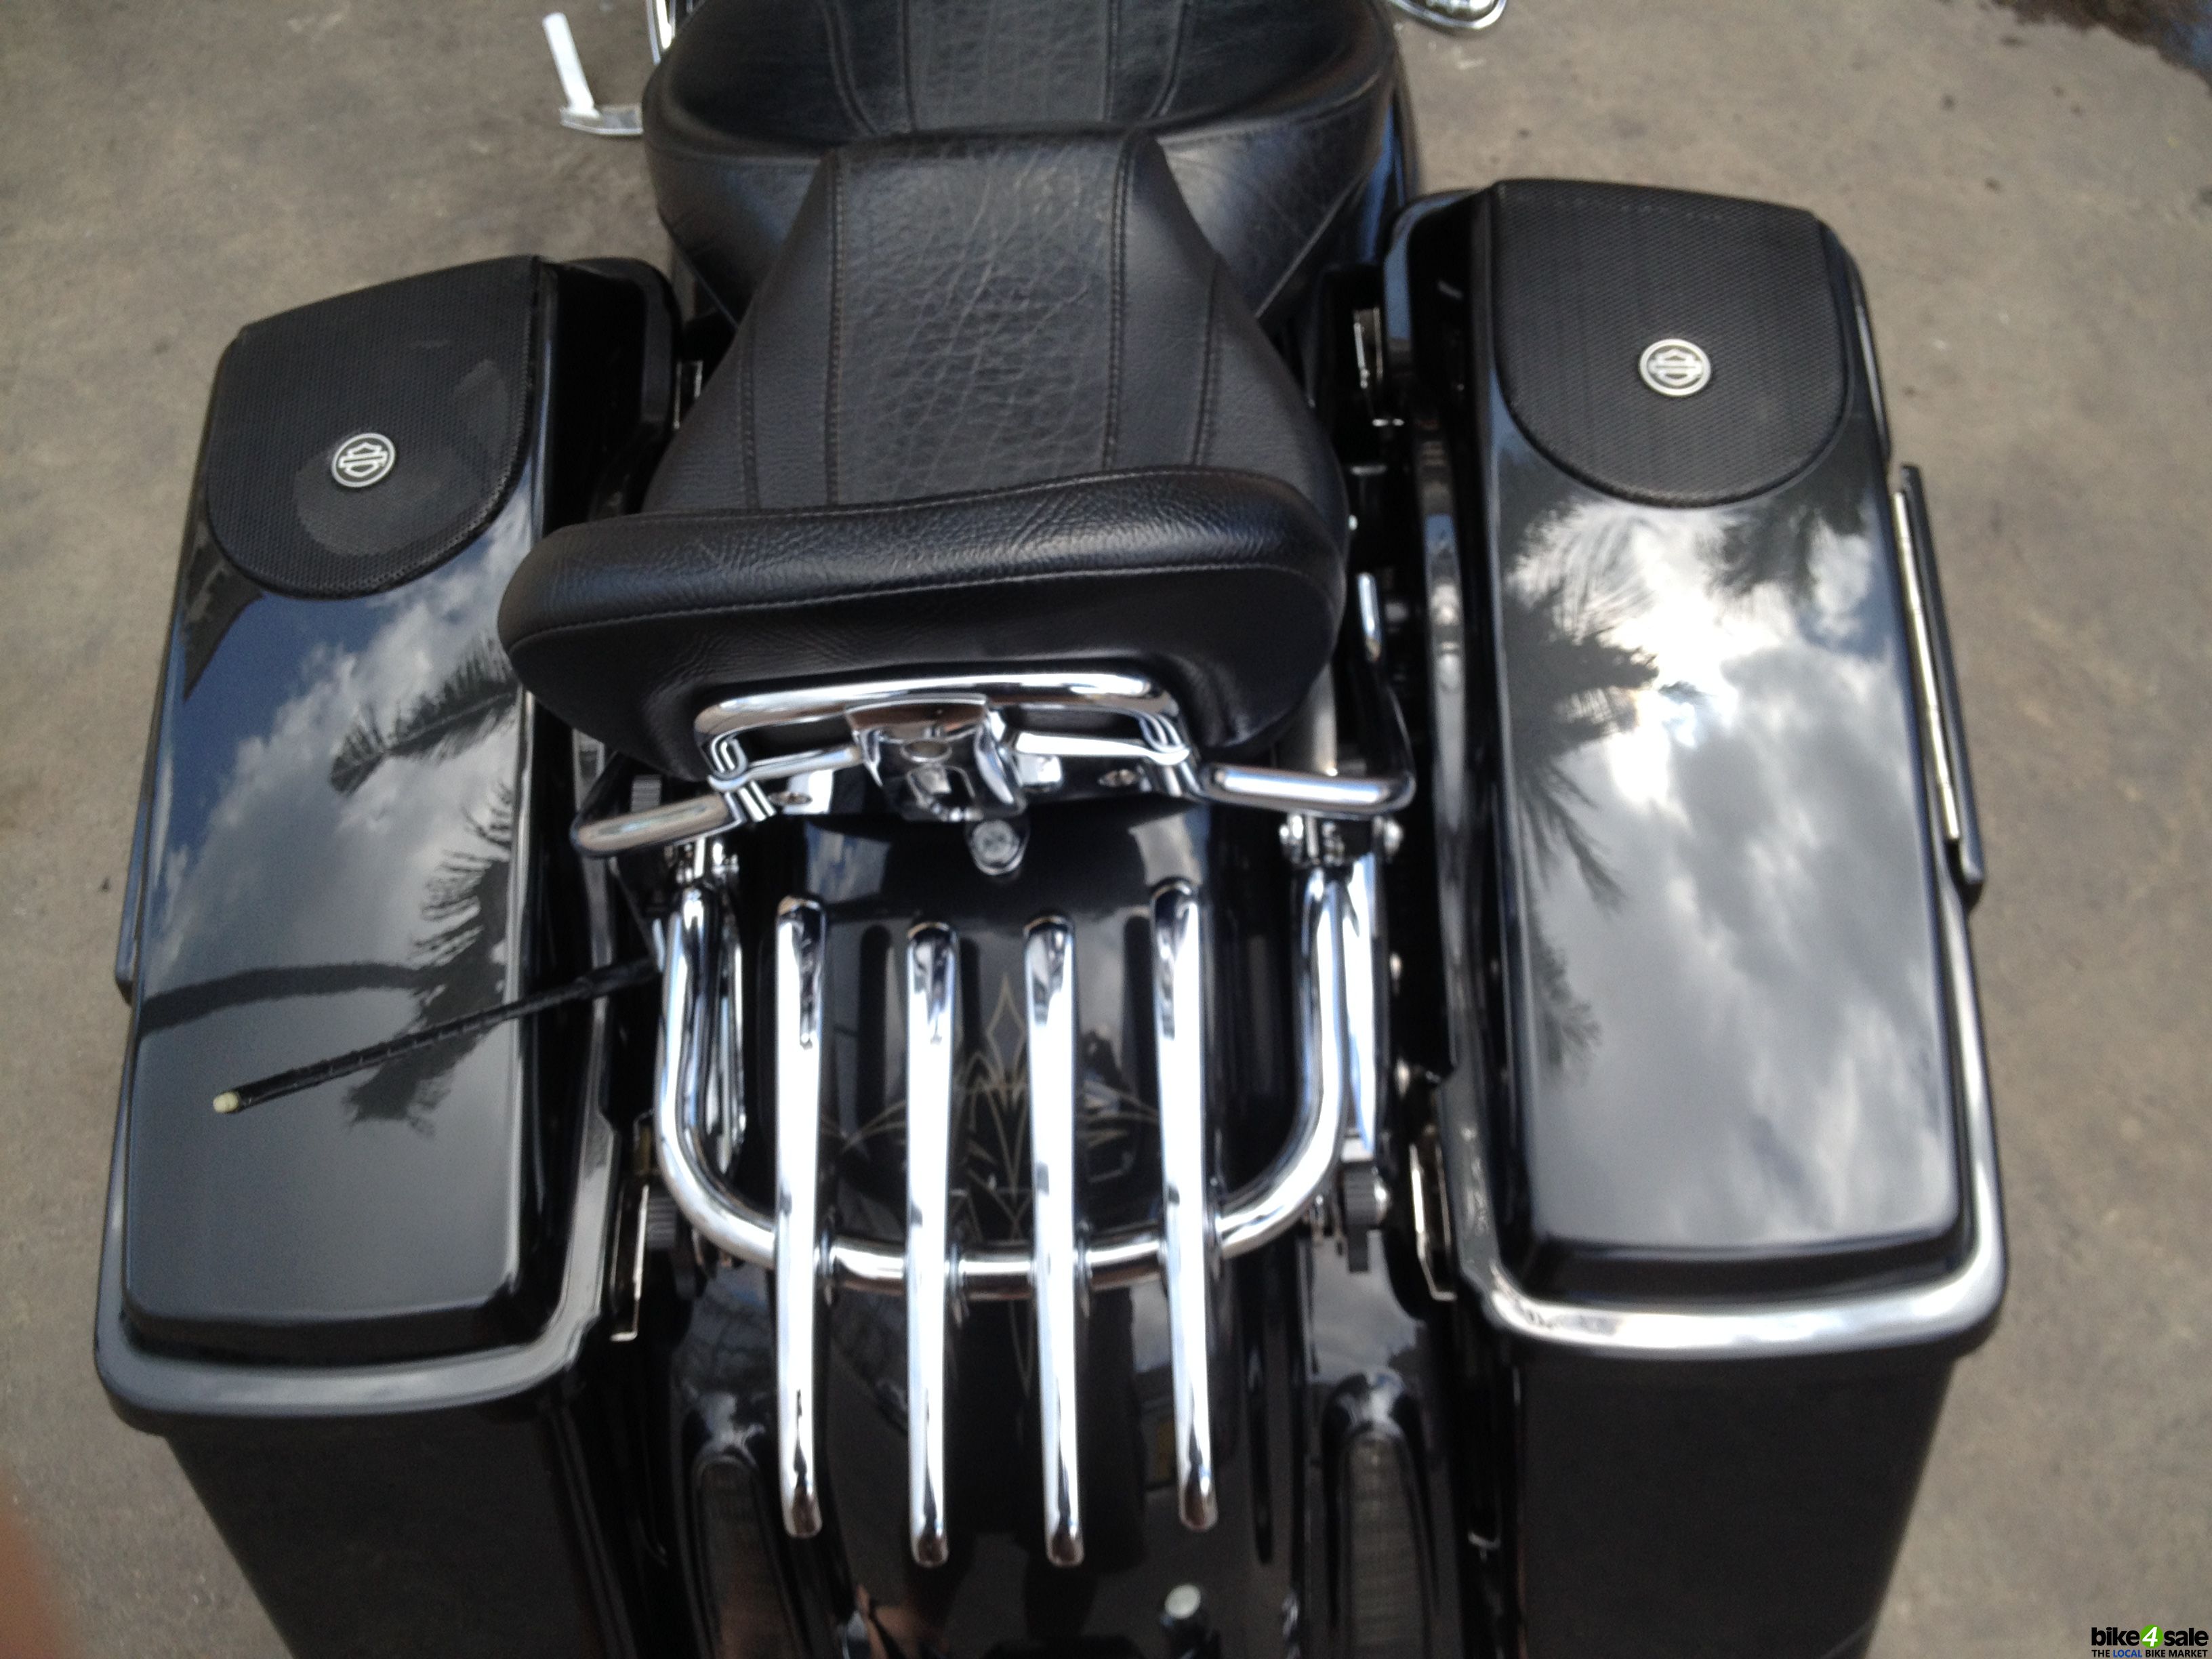 Harley-Davidson CVO (Street Glide) 